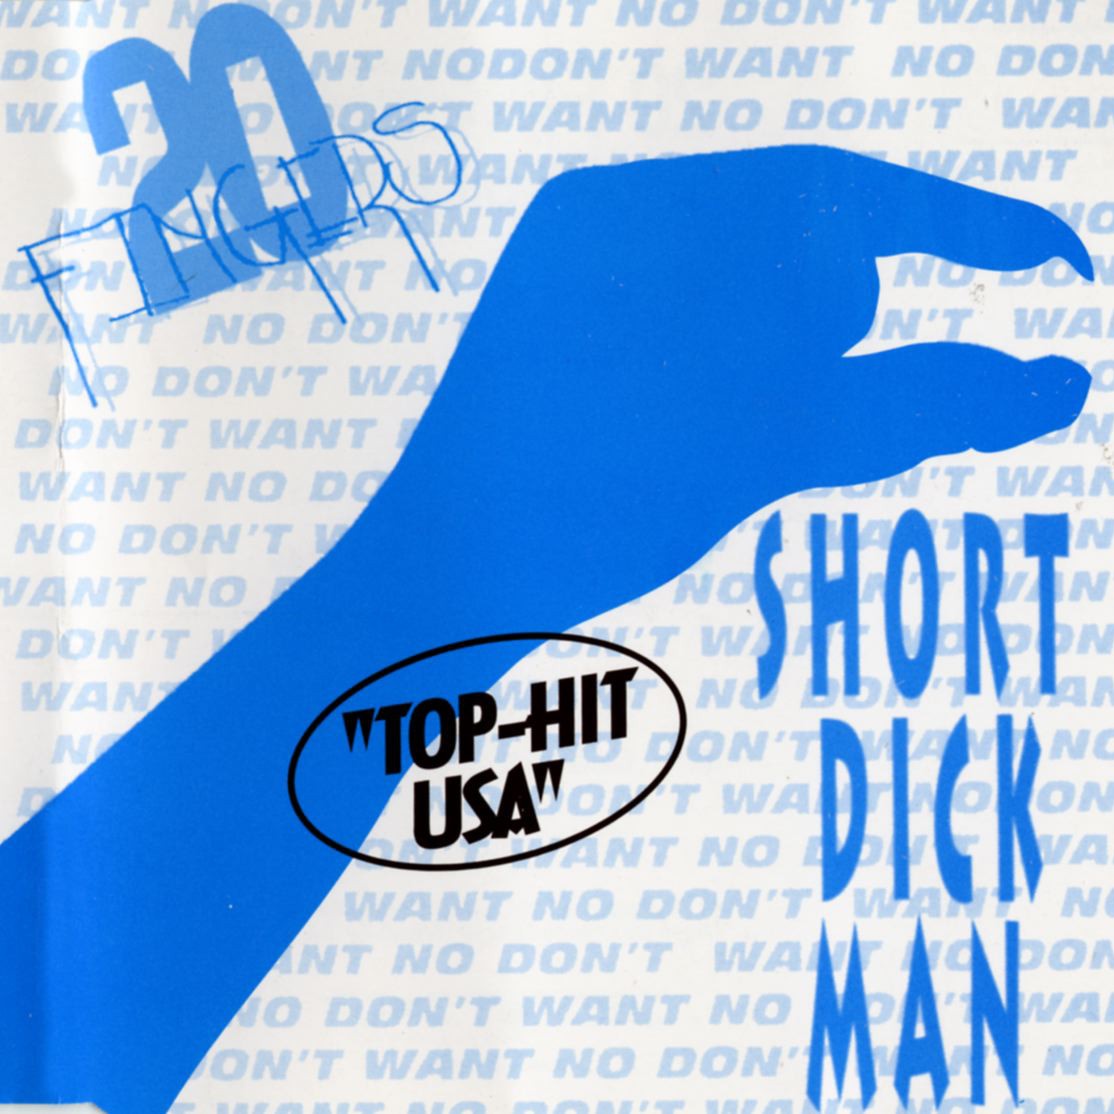 Short Dick Man (PaganyThe SoundRemix)